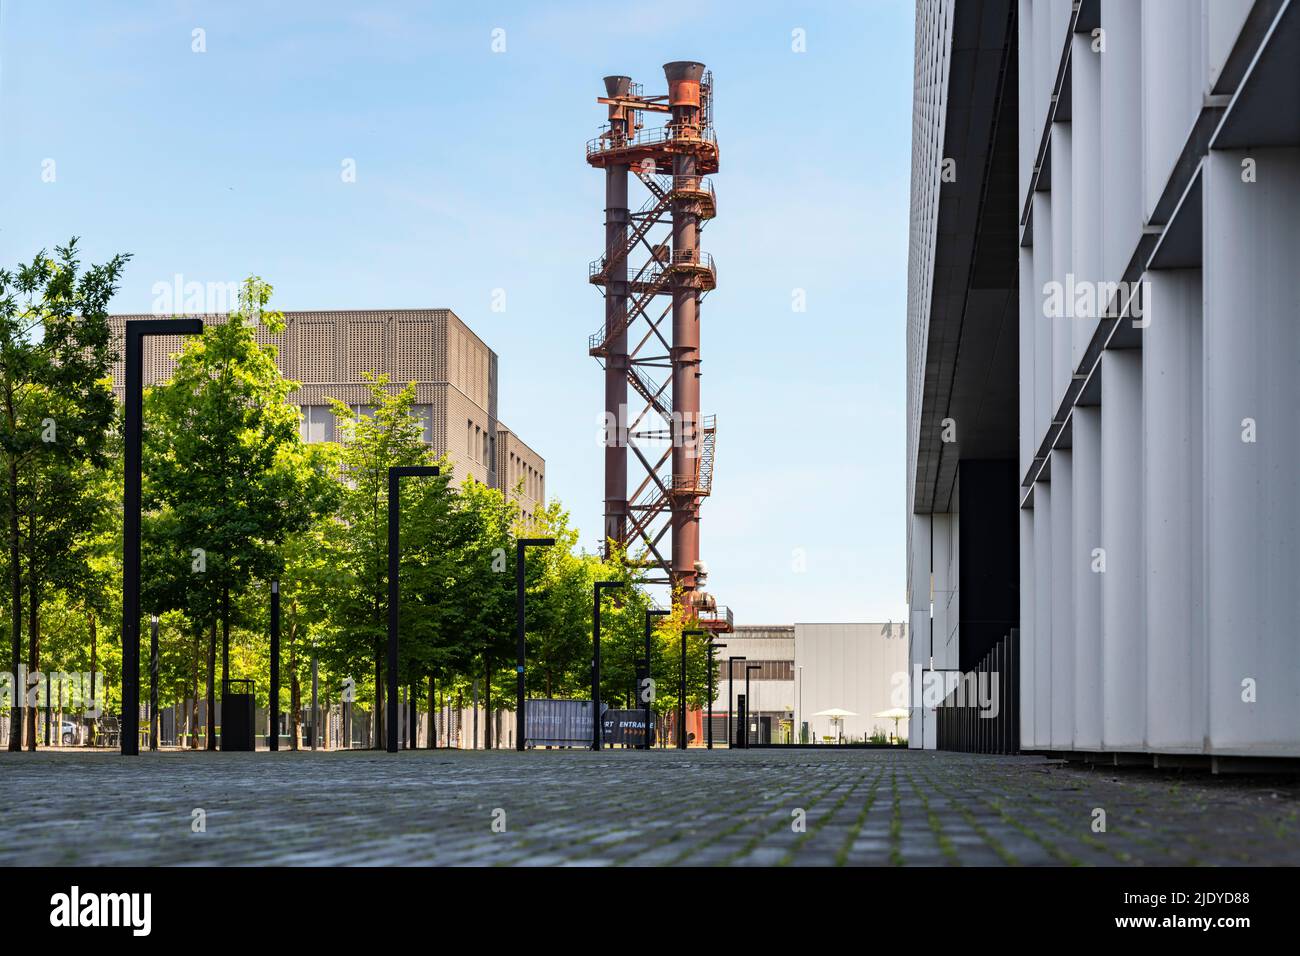 Belval in Esch-Sur-Alzette, Luxemburg, ist ein wissenschaftliches und kulturelles Zentrum. Esch-Sur-Alzette ist die Kulturhauptstadt Europas 2022. Stockfoto